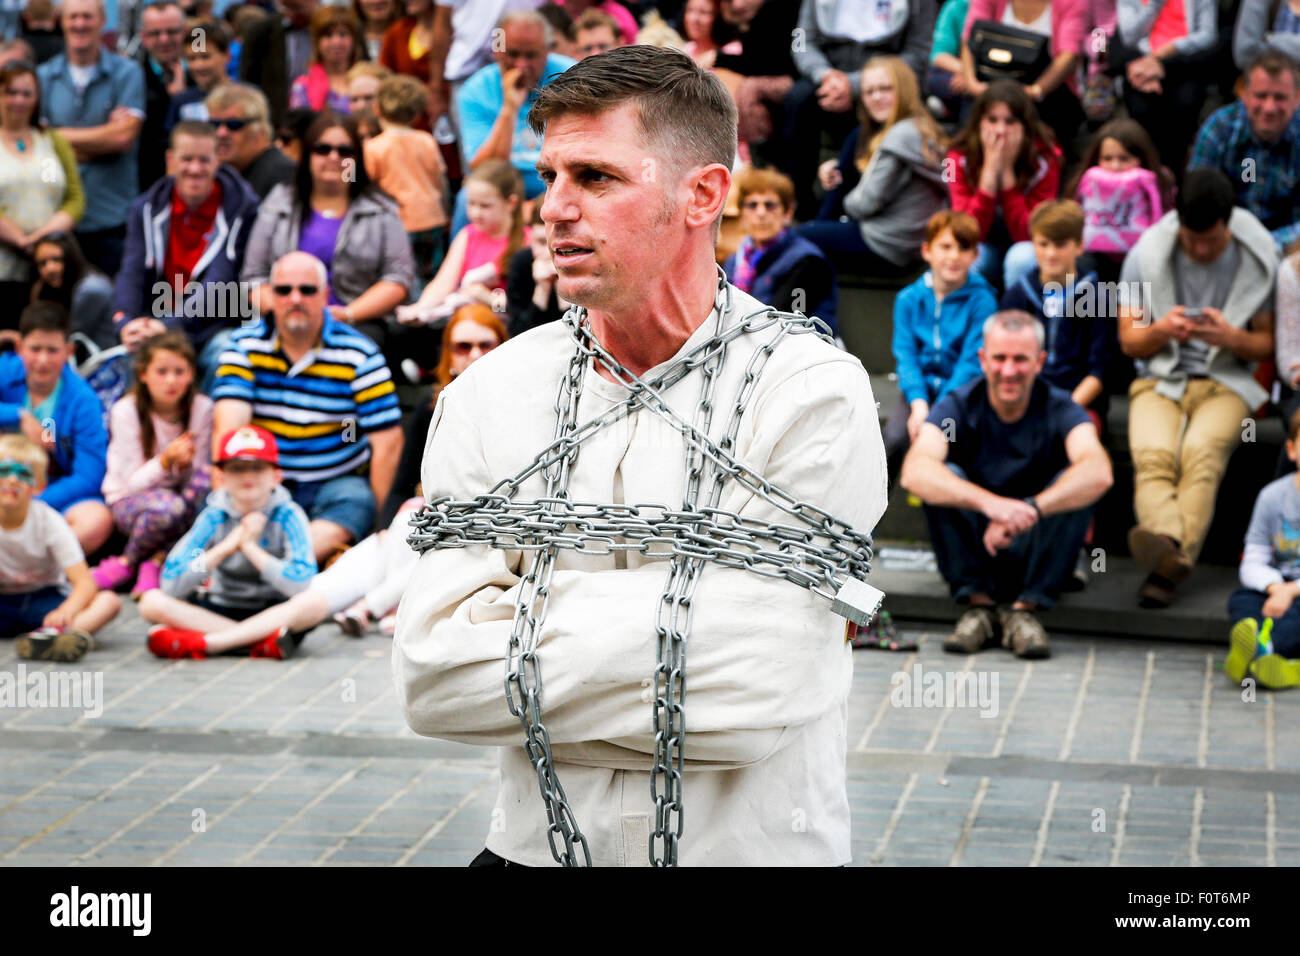 Straße Entertainer eine Handlung als ein Entfesselungskünstler, The Mound, Edinburgh Fringe Festival, Schottland, UK Stockfoto